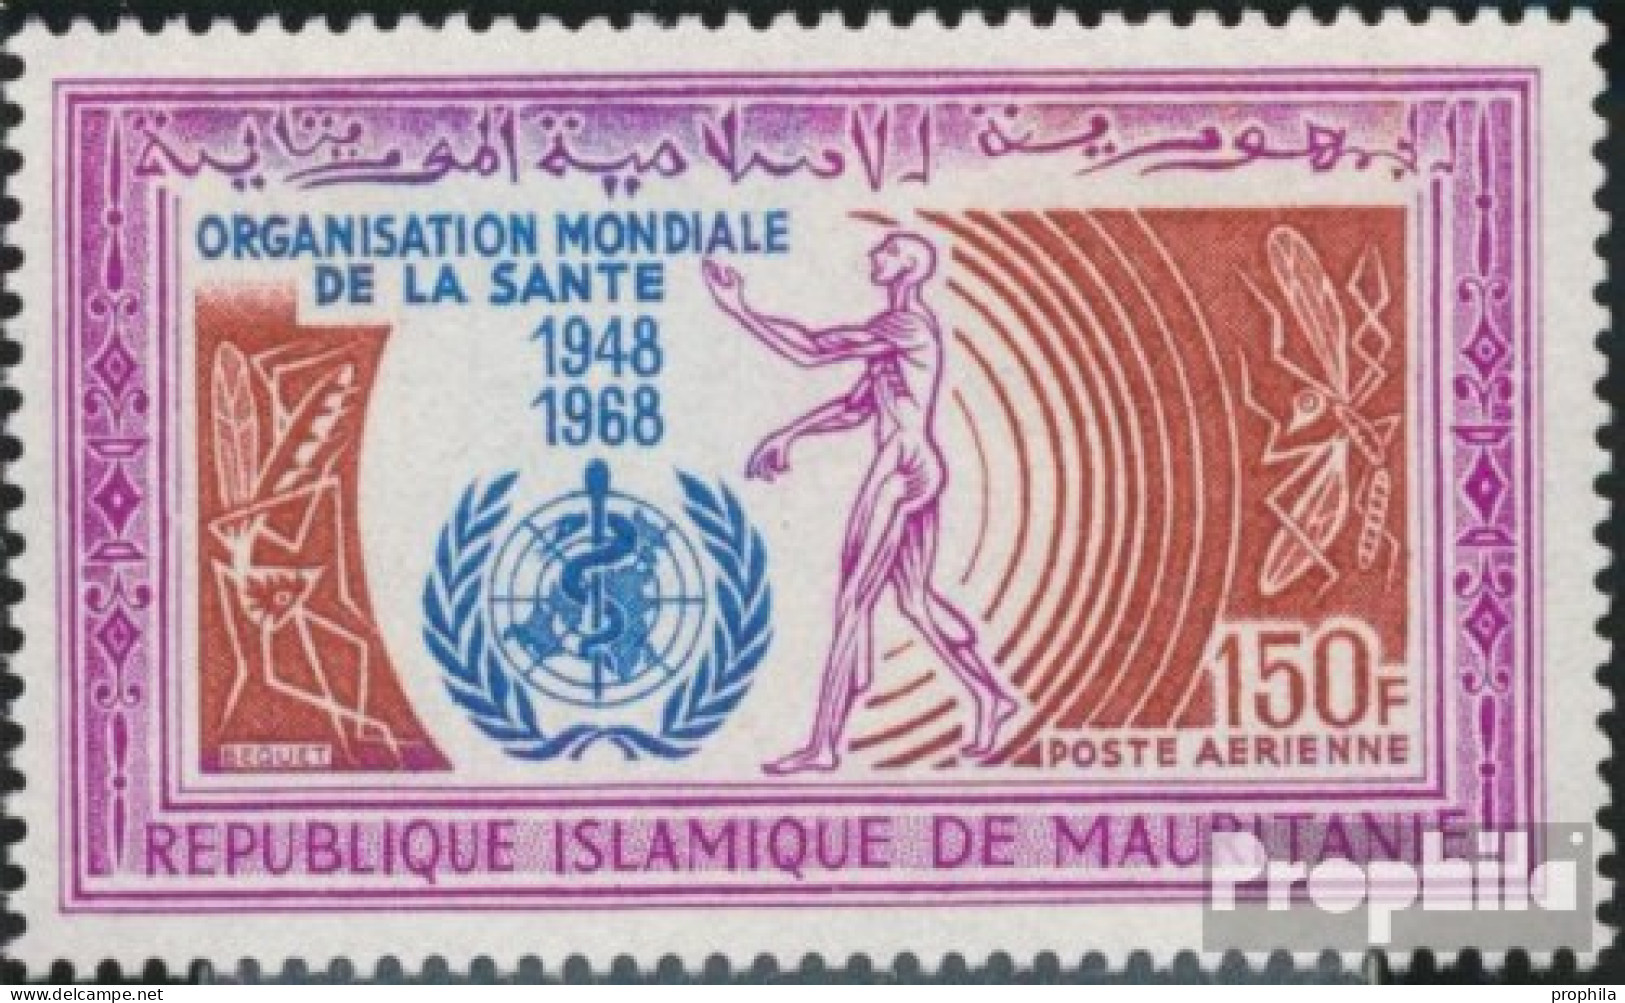 Mauretanien 341 (kompl.Ausg.) Postfrisch 1968 WHO - Mauritanie (1960-...)